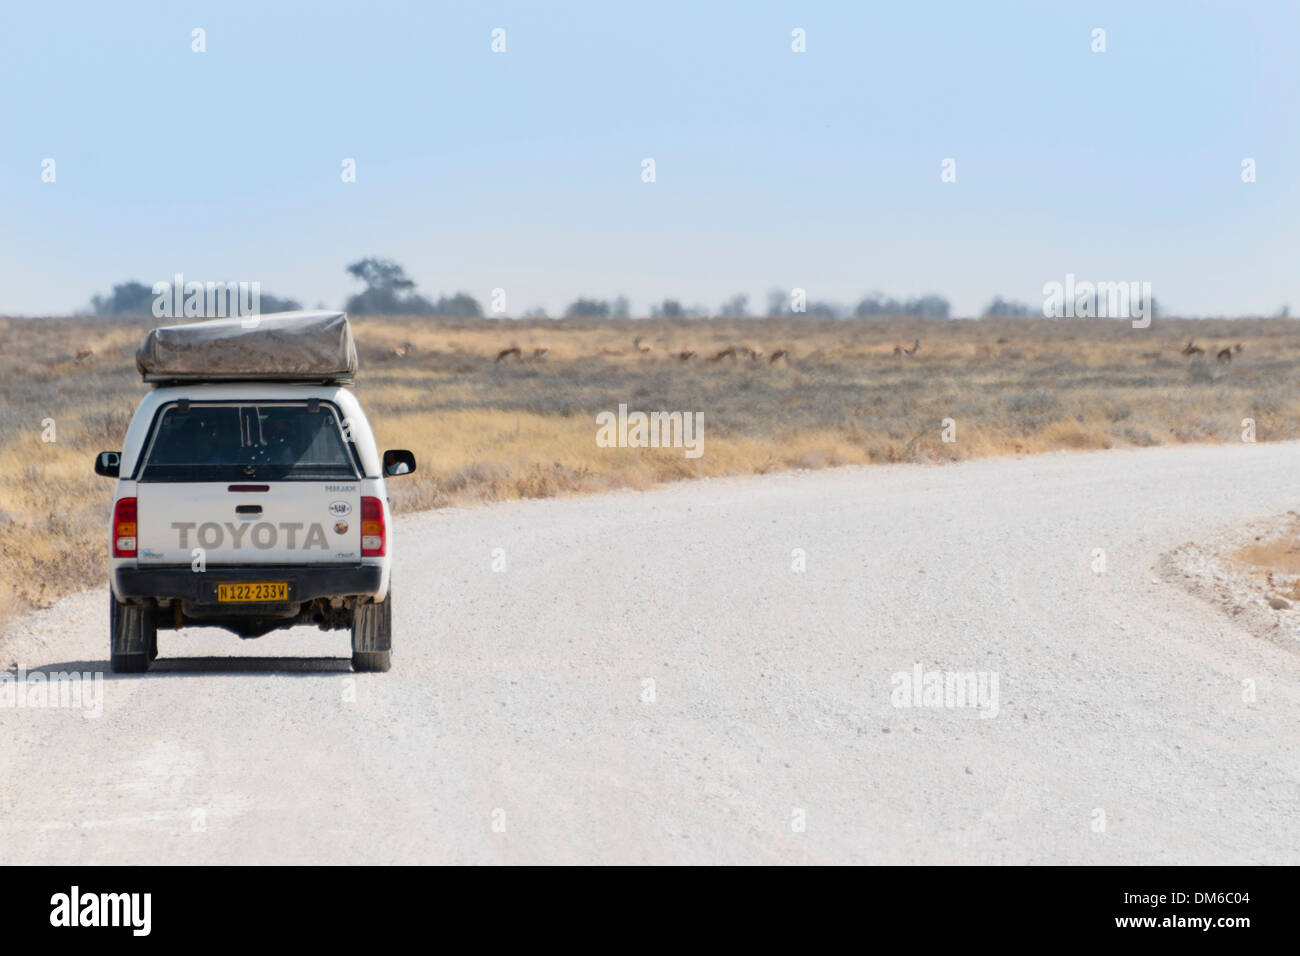 Toyota parking at the roadside, Etosha National Park, Namibia Stock Photo